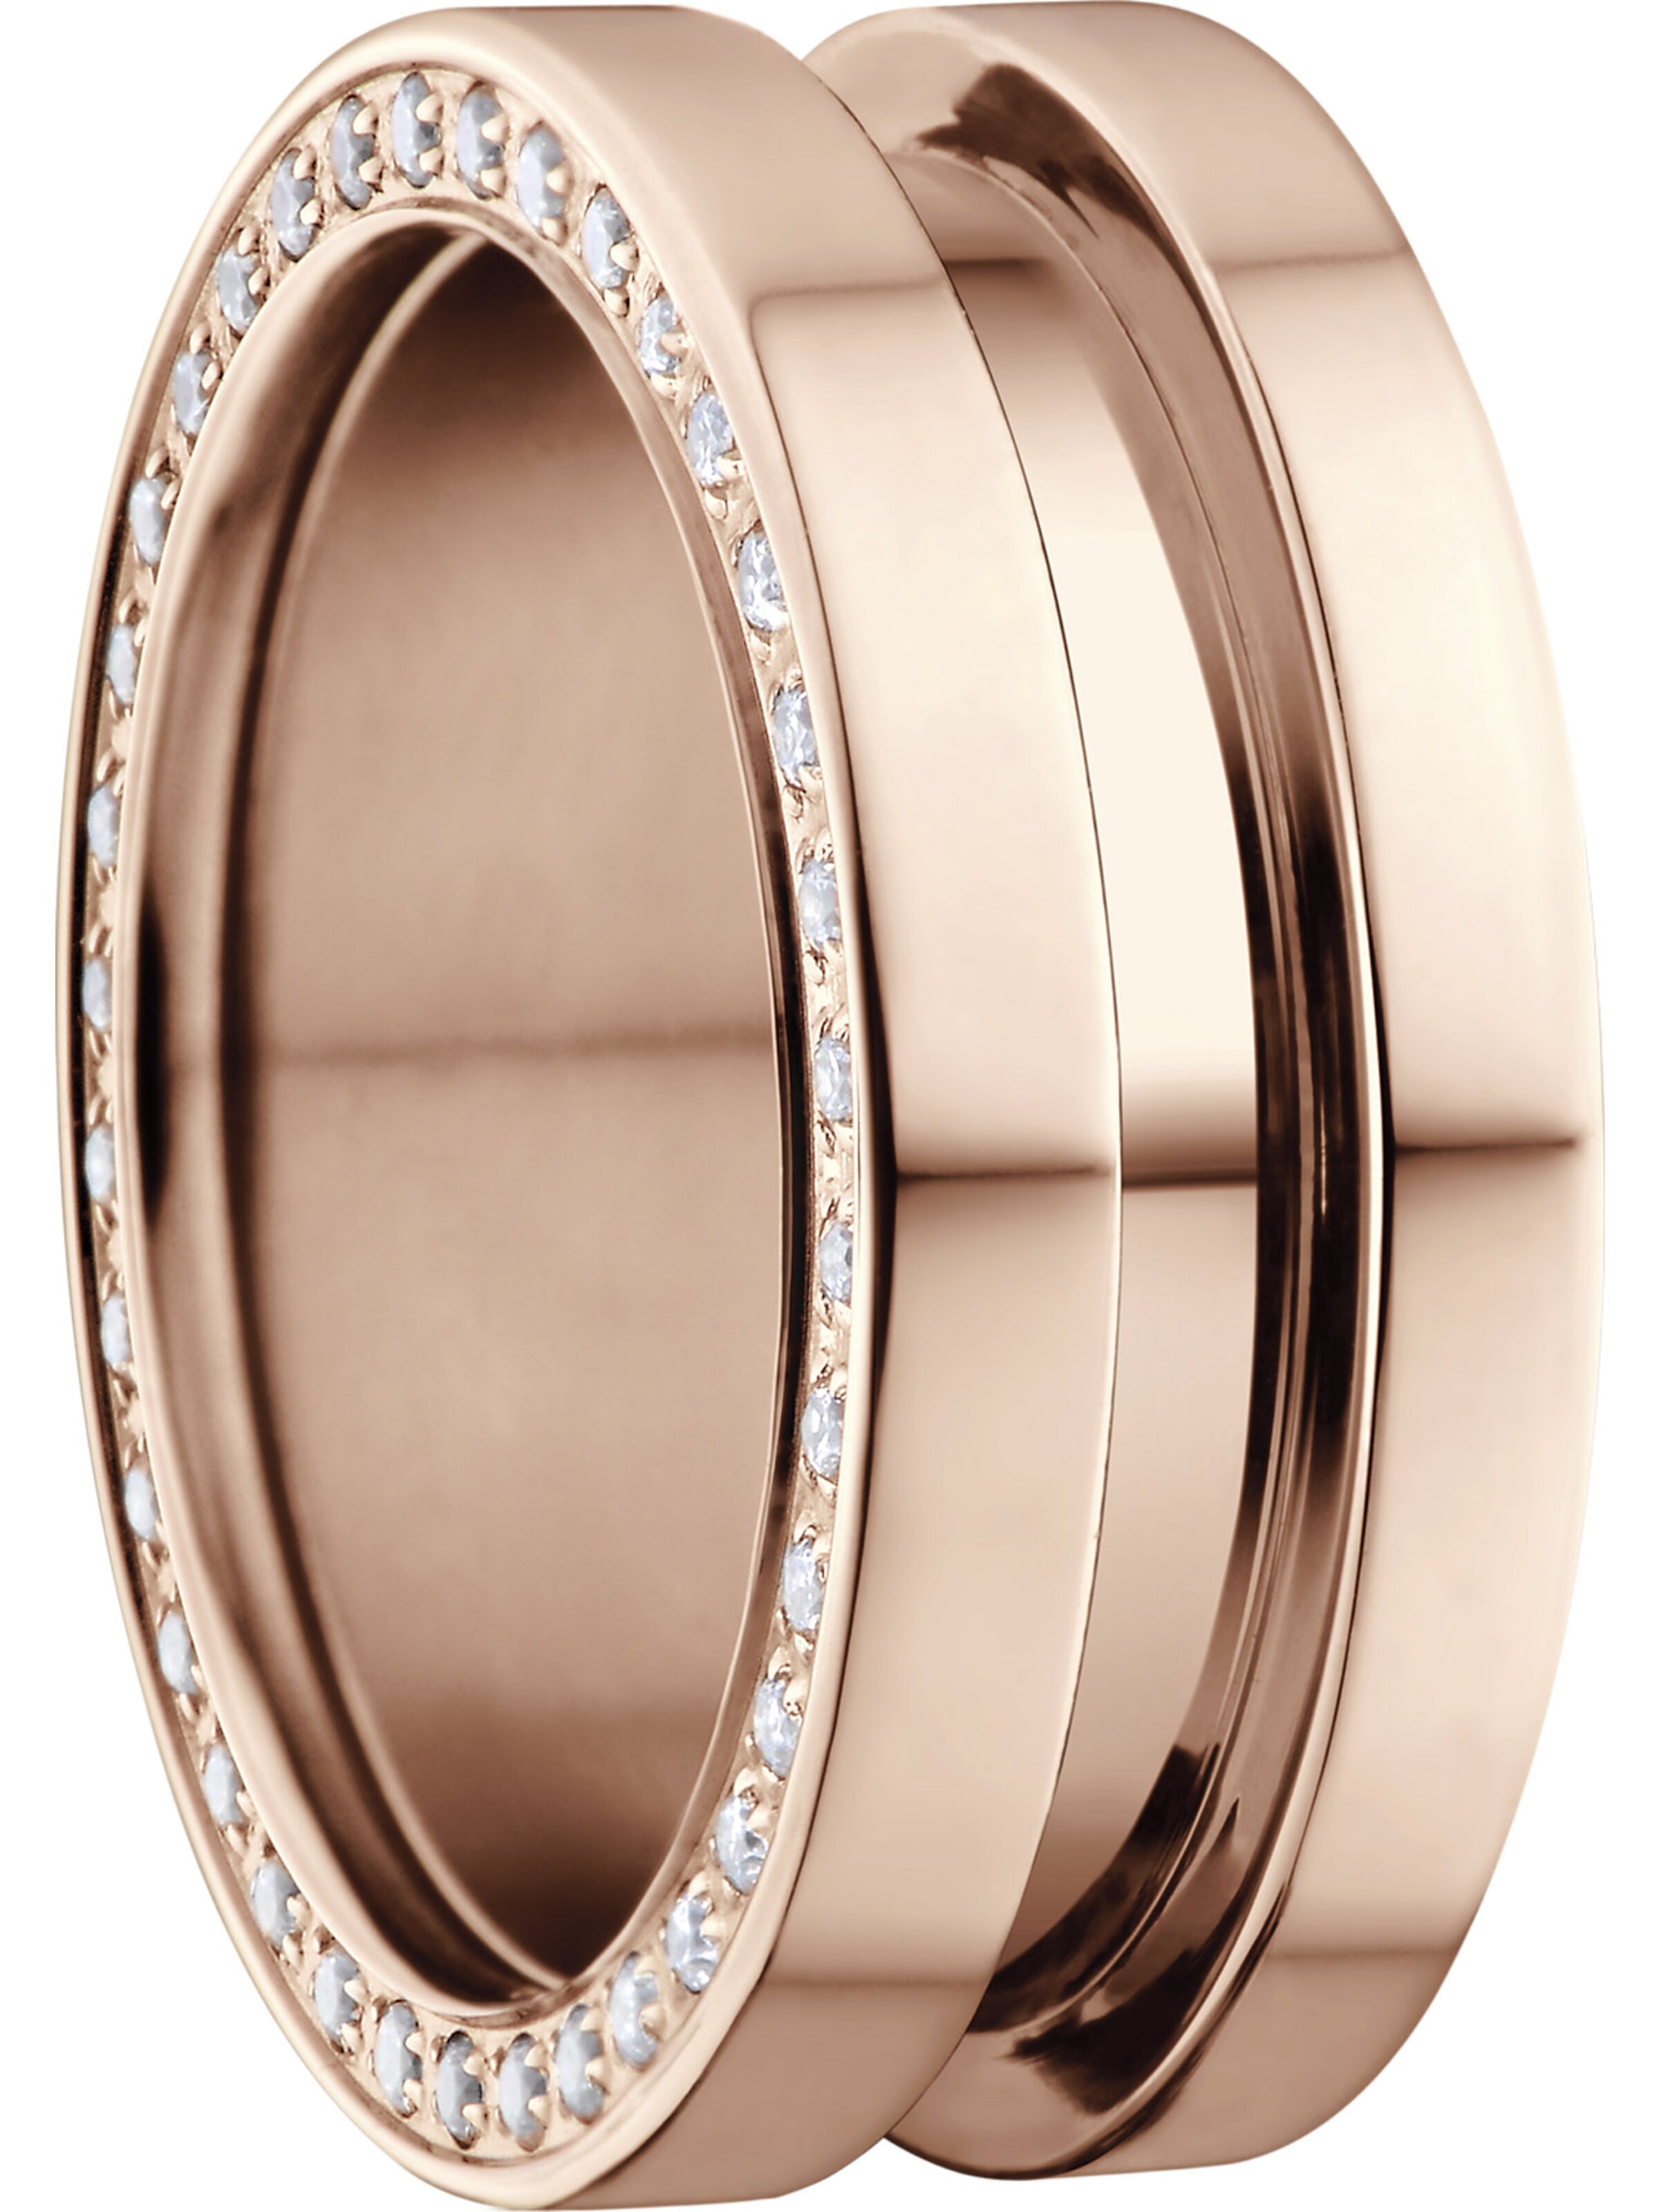 BERING Ring in Rosegold 